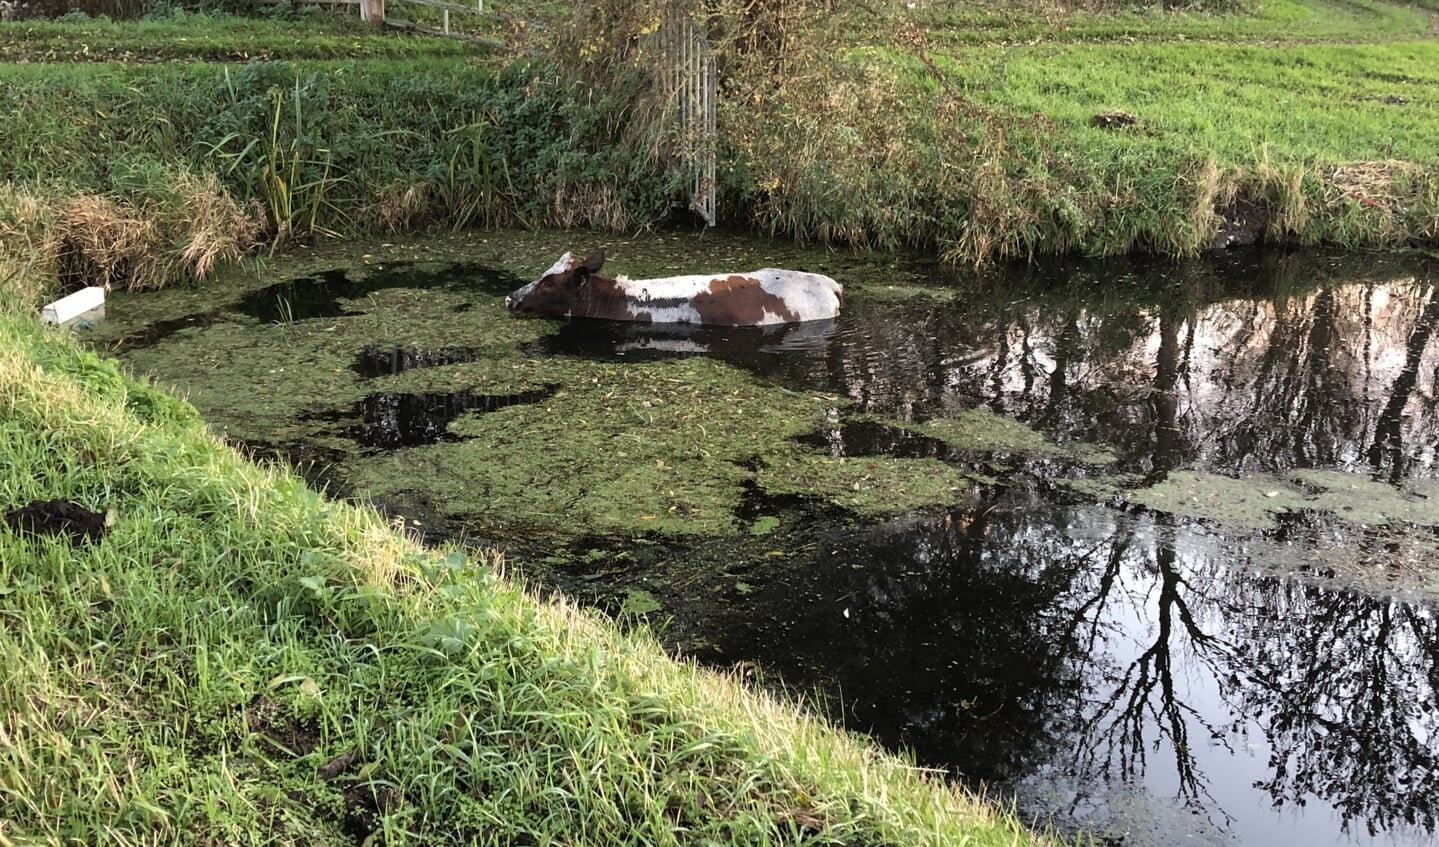 De koe kijkt rustig rond in het water 